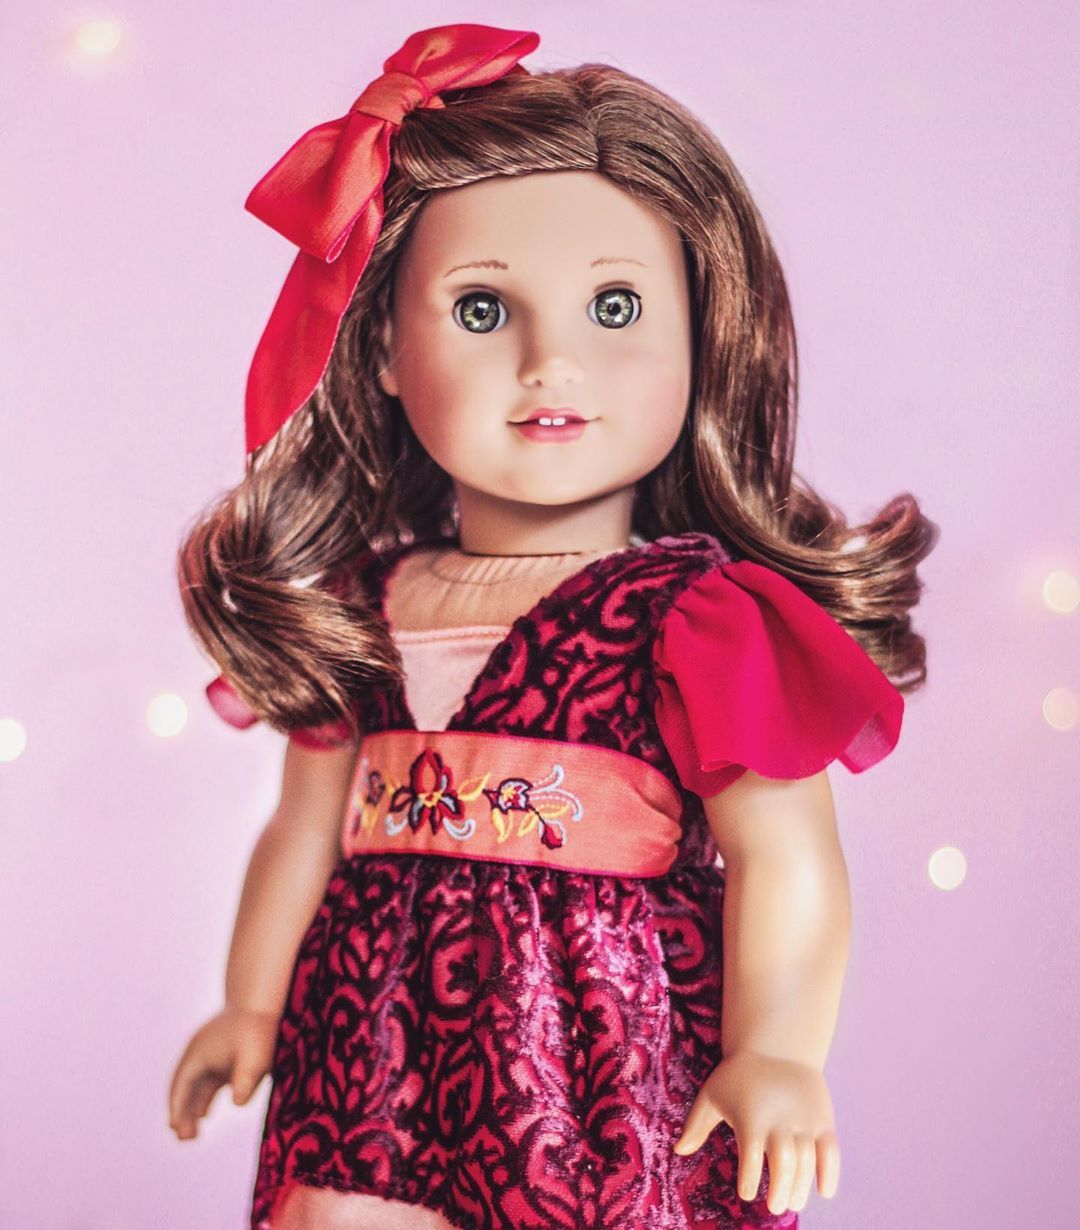 american girl dolls on Instagram: “Good Morning ☀️ Rebecca